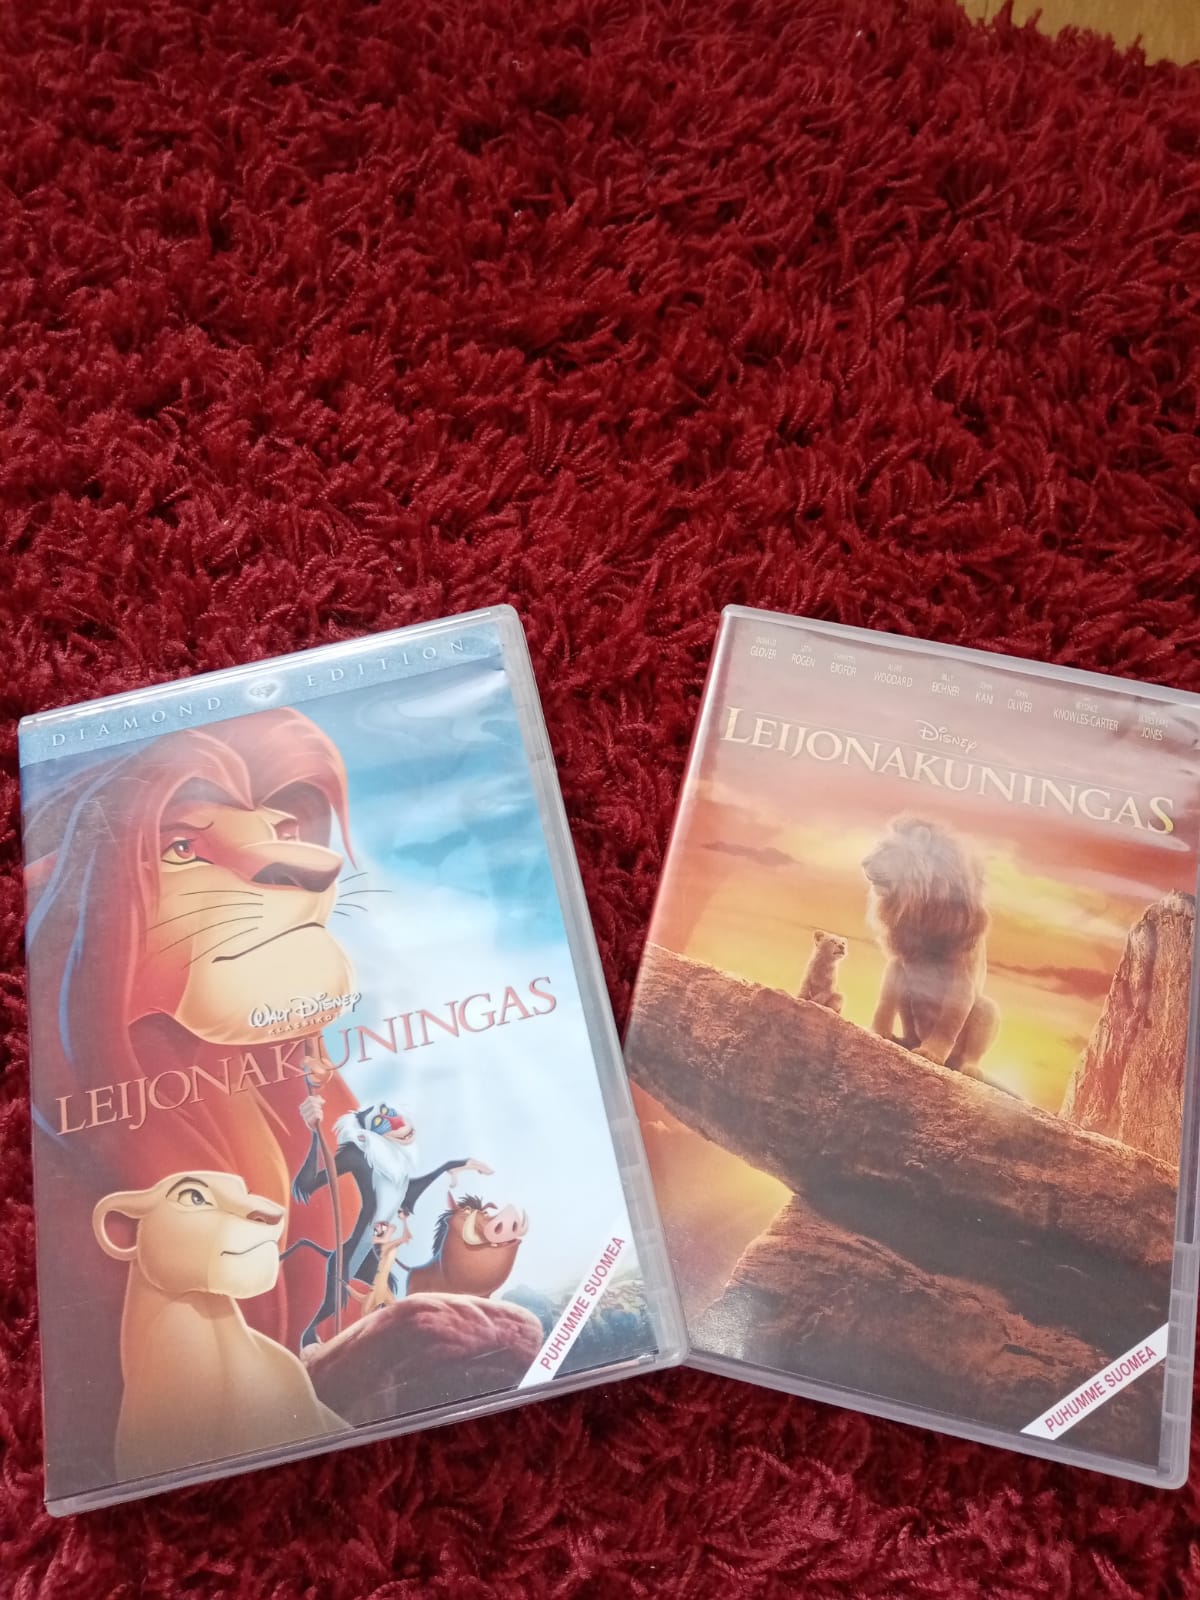 Jenni Nissisen kuvassa kaksi leijonakuningas -dvd-kuorta.